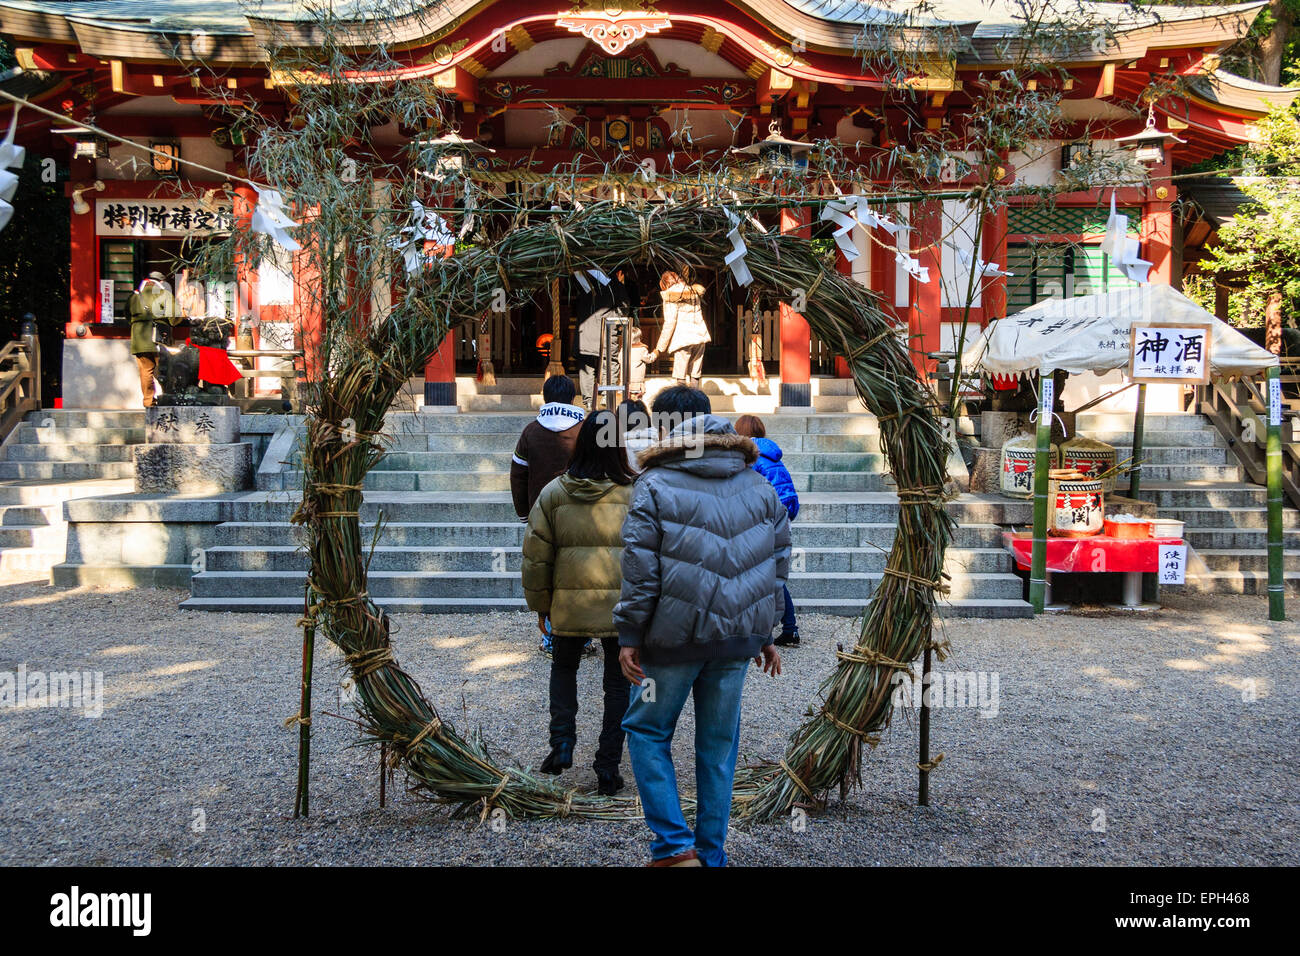 Japan, Nishinomiya, Koshiki-wa-Schrein. Junges Paar betritt den Schrein, indem es durch ein Chi-no-wa geht, einen gedrehten Seilkreis, der für das neue Jahr aufgestellt wurde. Stockfoto